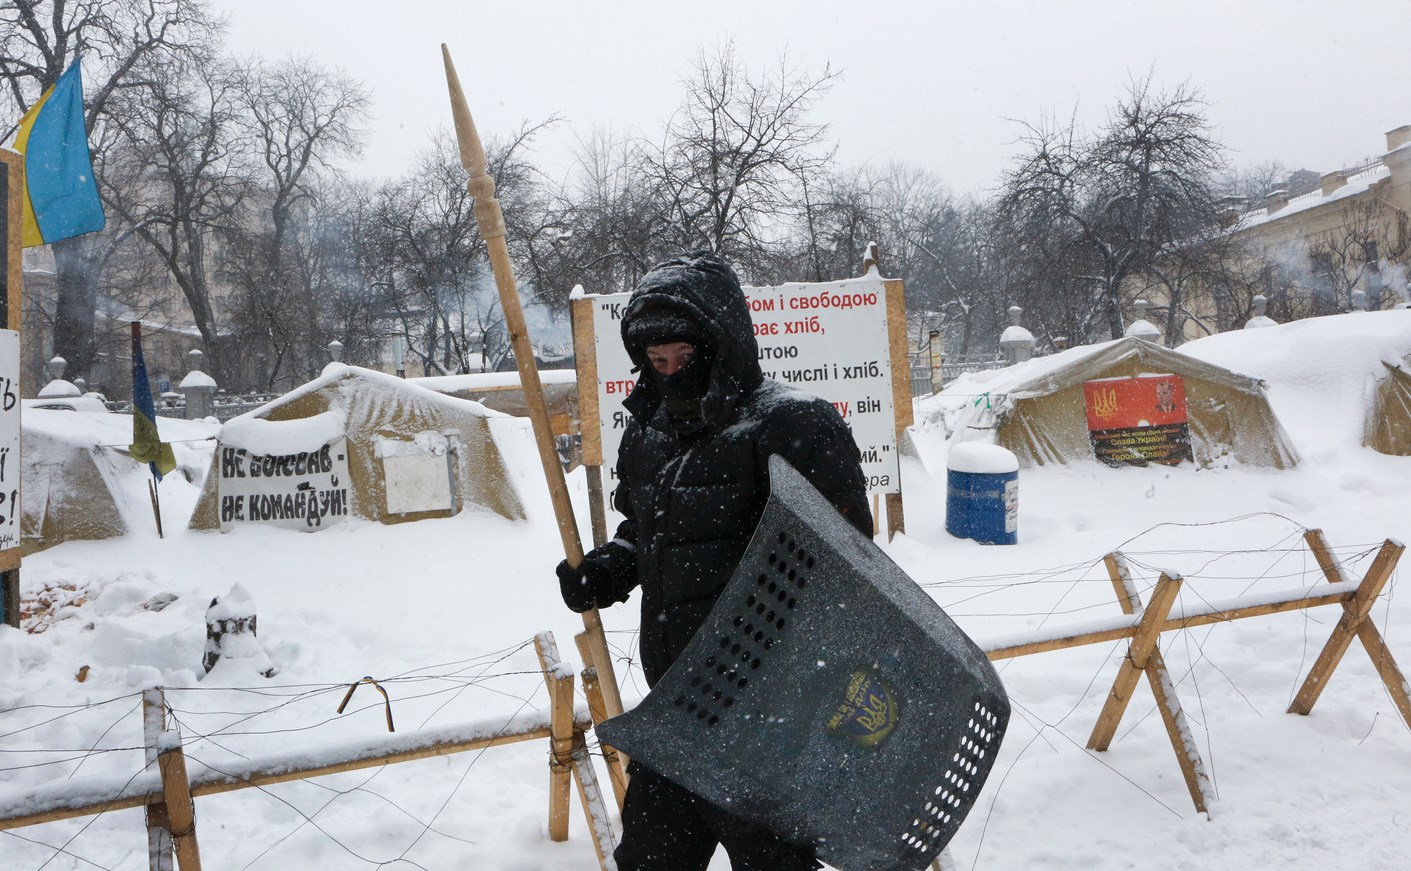 10 ранени при сблъсъци в центъра на Киев (СНИМКИ)